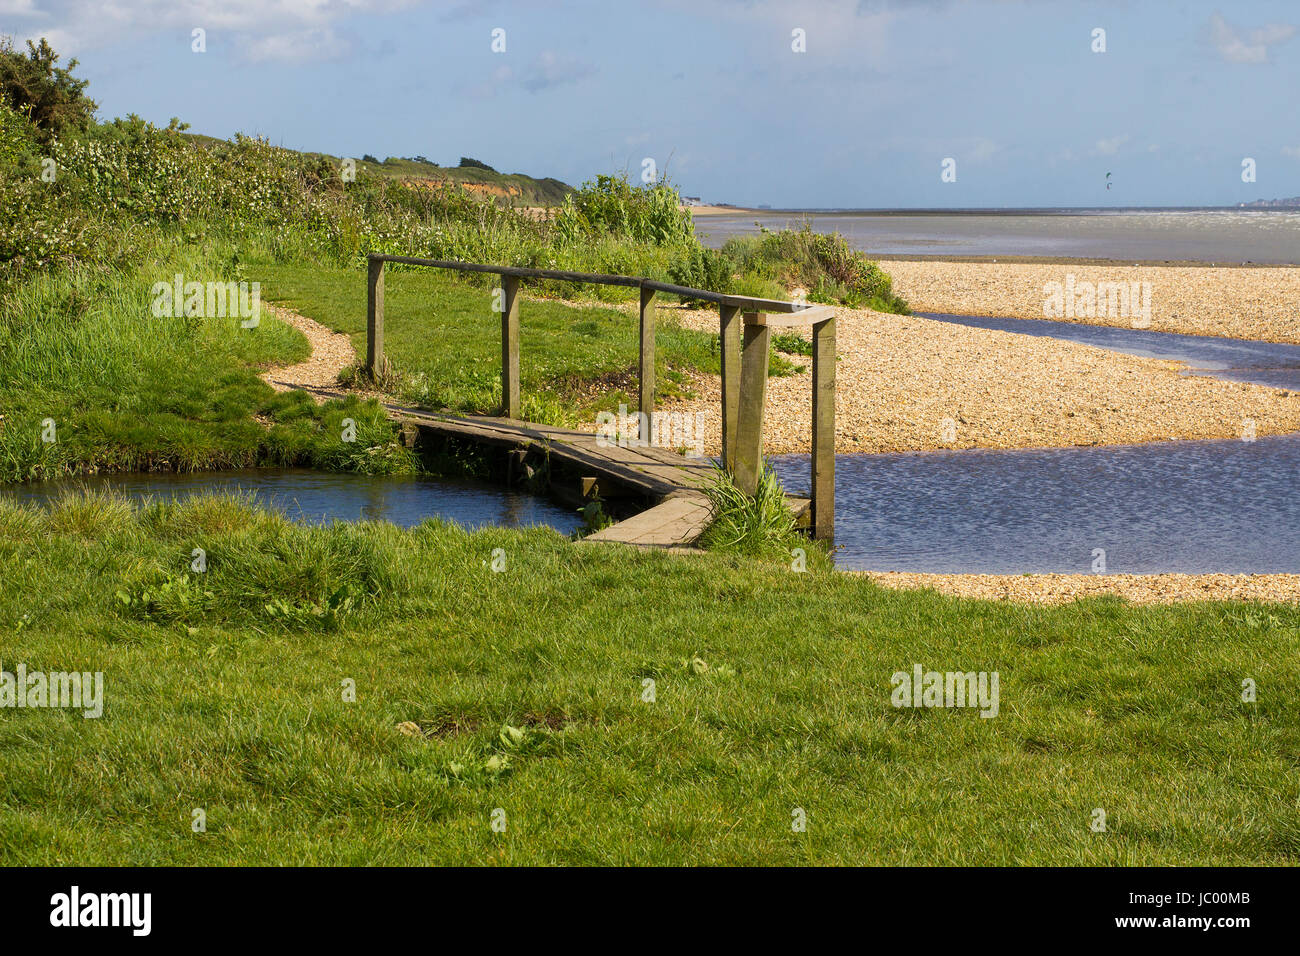 La remote shell beach en poudre et pied en bois pont sur le Solent, Southampton Water à la fin de l'hameçon Lane allée cavalière près de Co Titchfield Banque D'Images